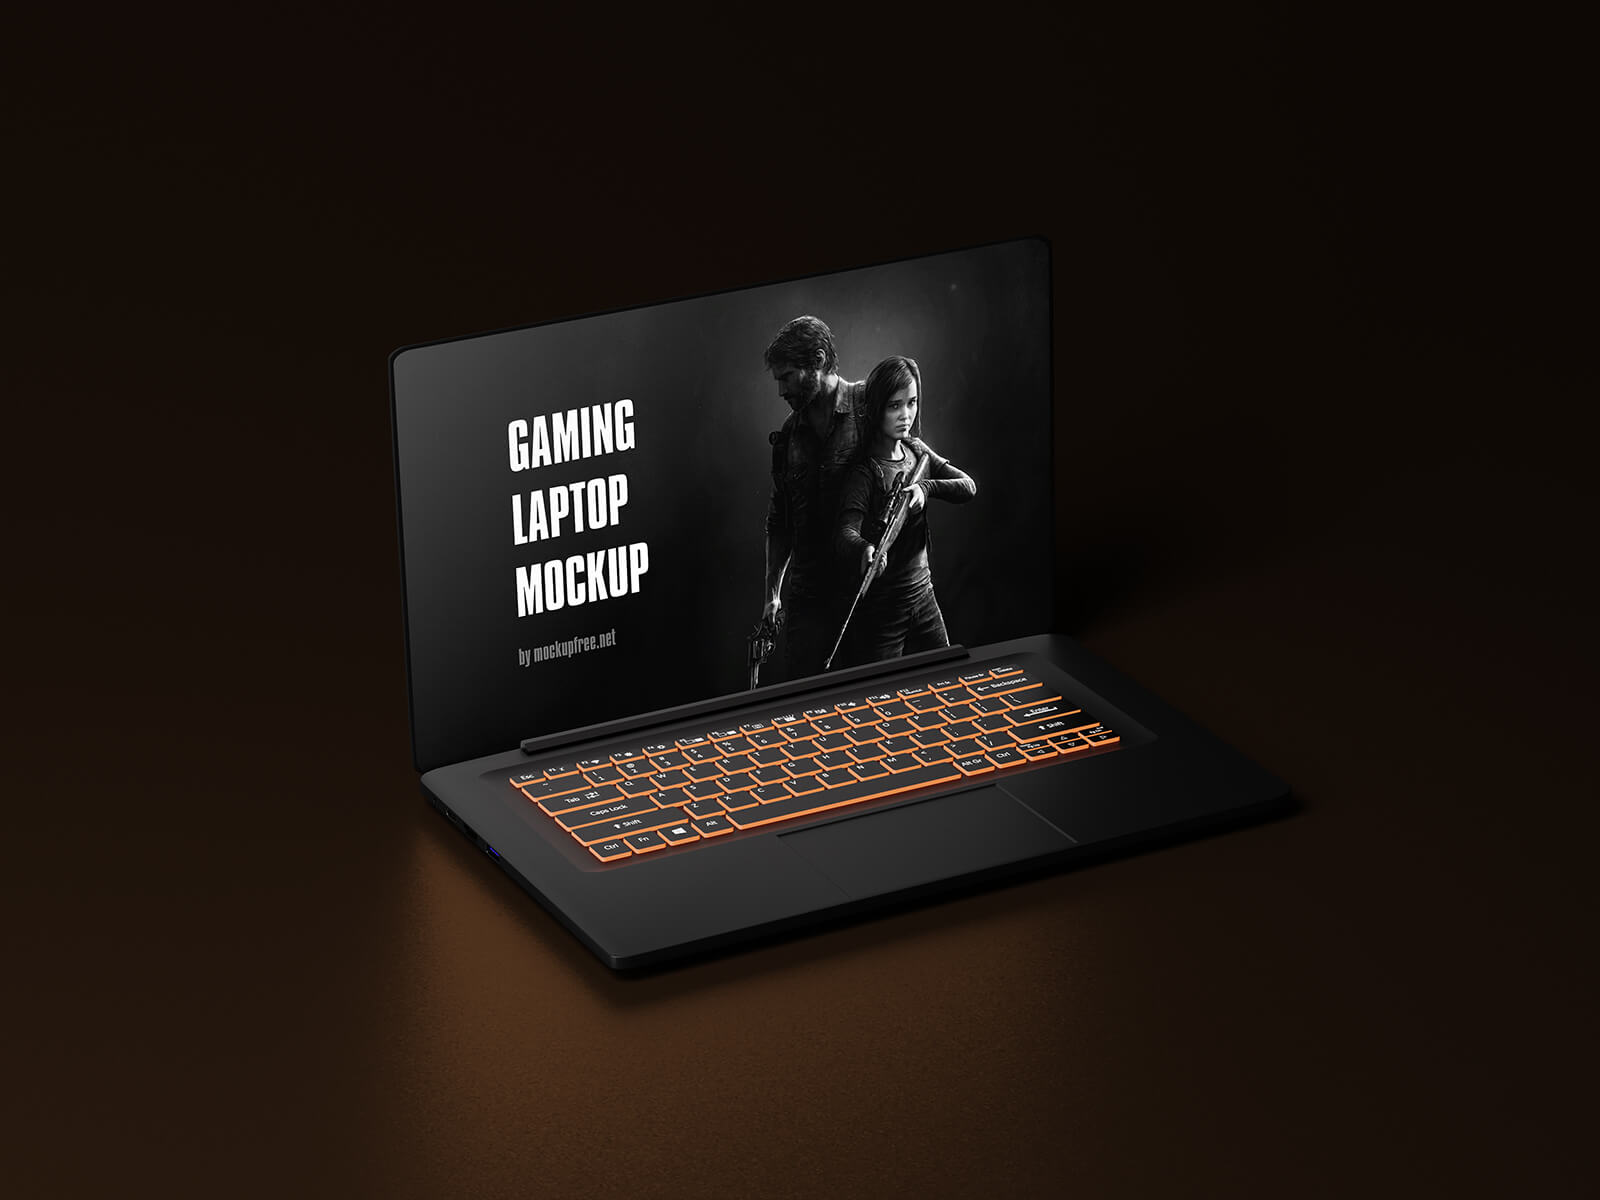 Free Gaming Laptop Mockup PSD